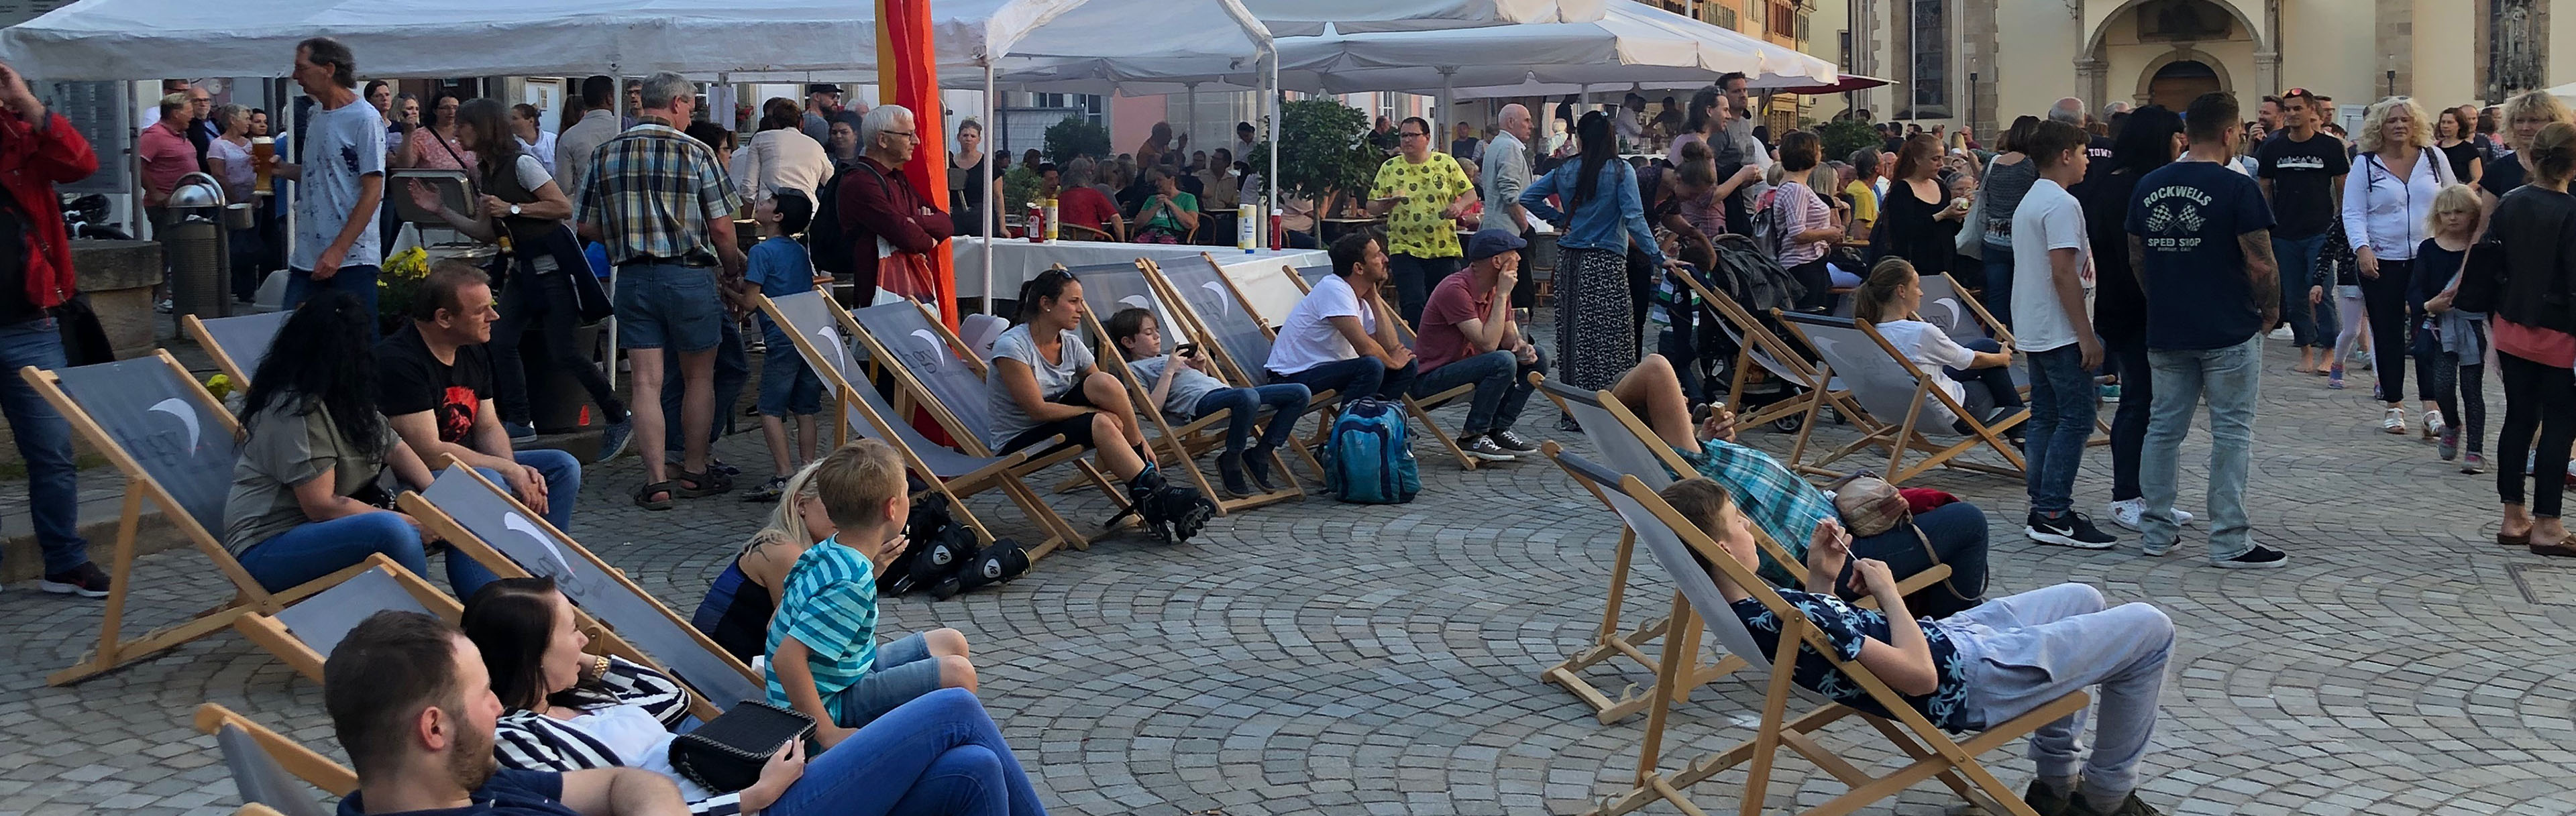 Menschen in Liegestühlen auf dem Marktplatz